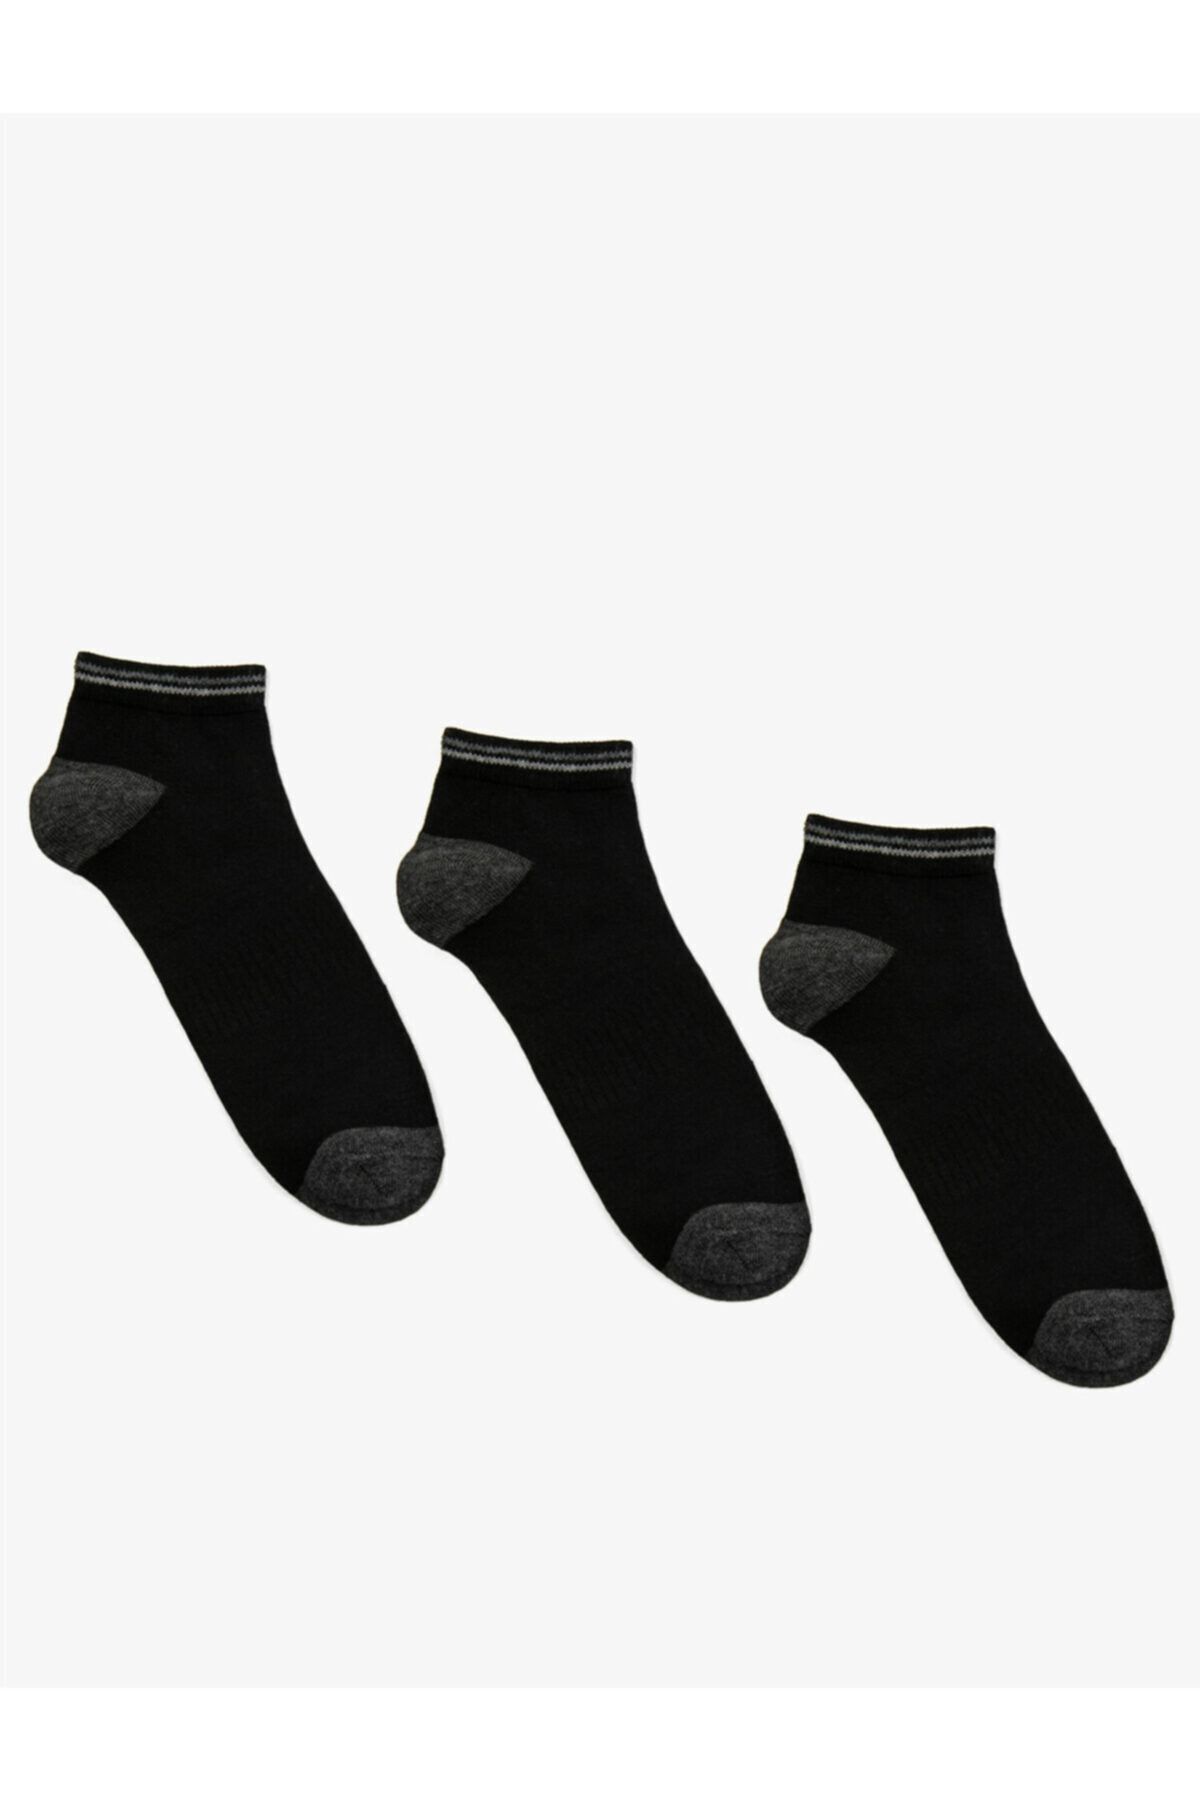 Koton Erkek Siyah Pamuklu Basic Çorap Seti